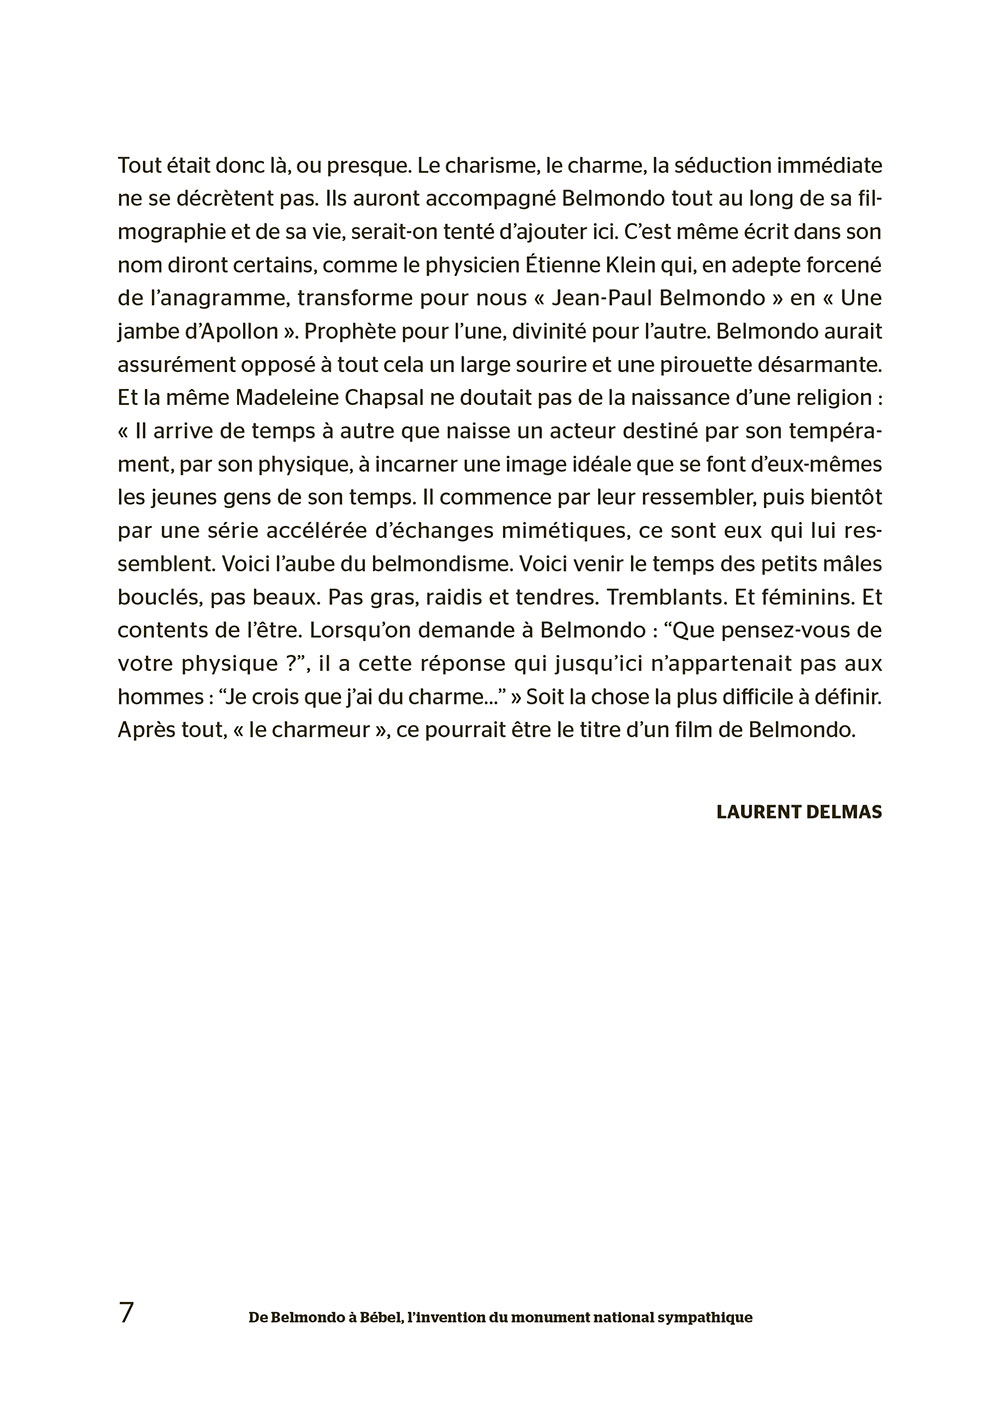 Jean-Paul Belmondo. Laurent Delmas-p7